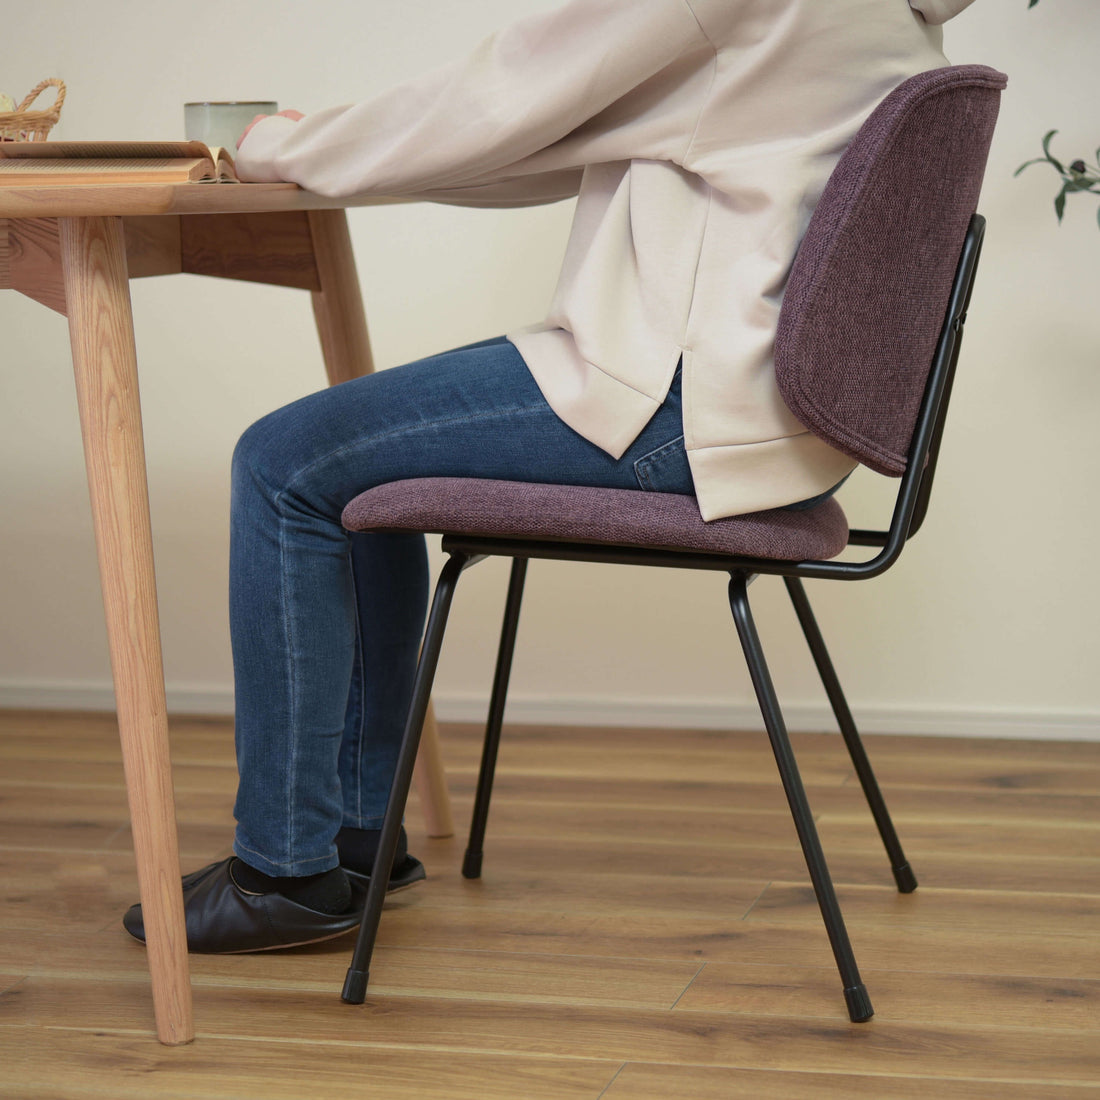 正座椅子 パーソナルチェア 幅43.5cm レッド 背もたれ付き 木製 脚付き